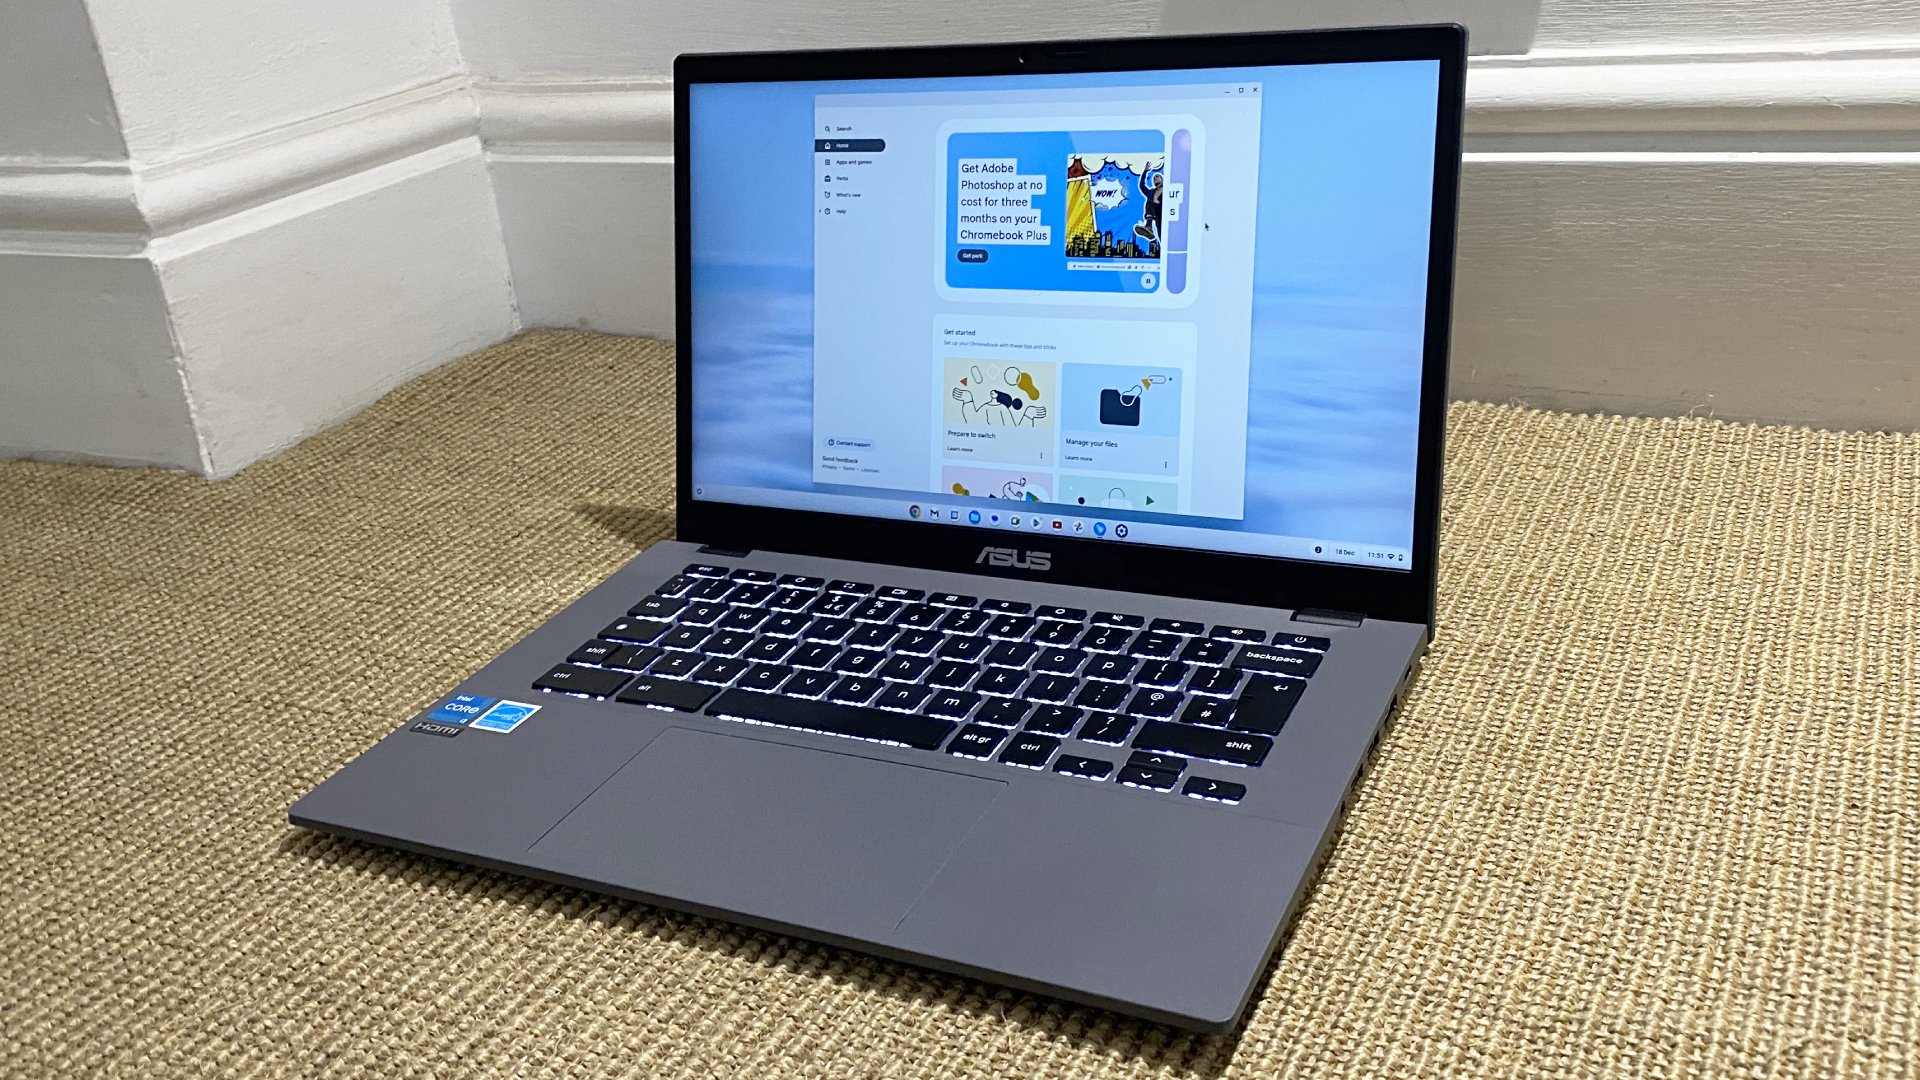 الكمبيوتر المحمول Asus Chromebook Plus على سطح منقوش باللون البيج